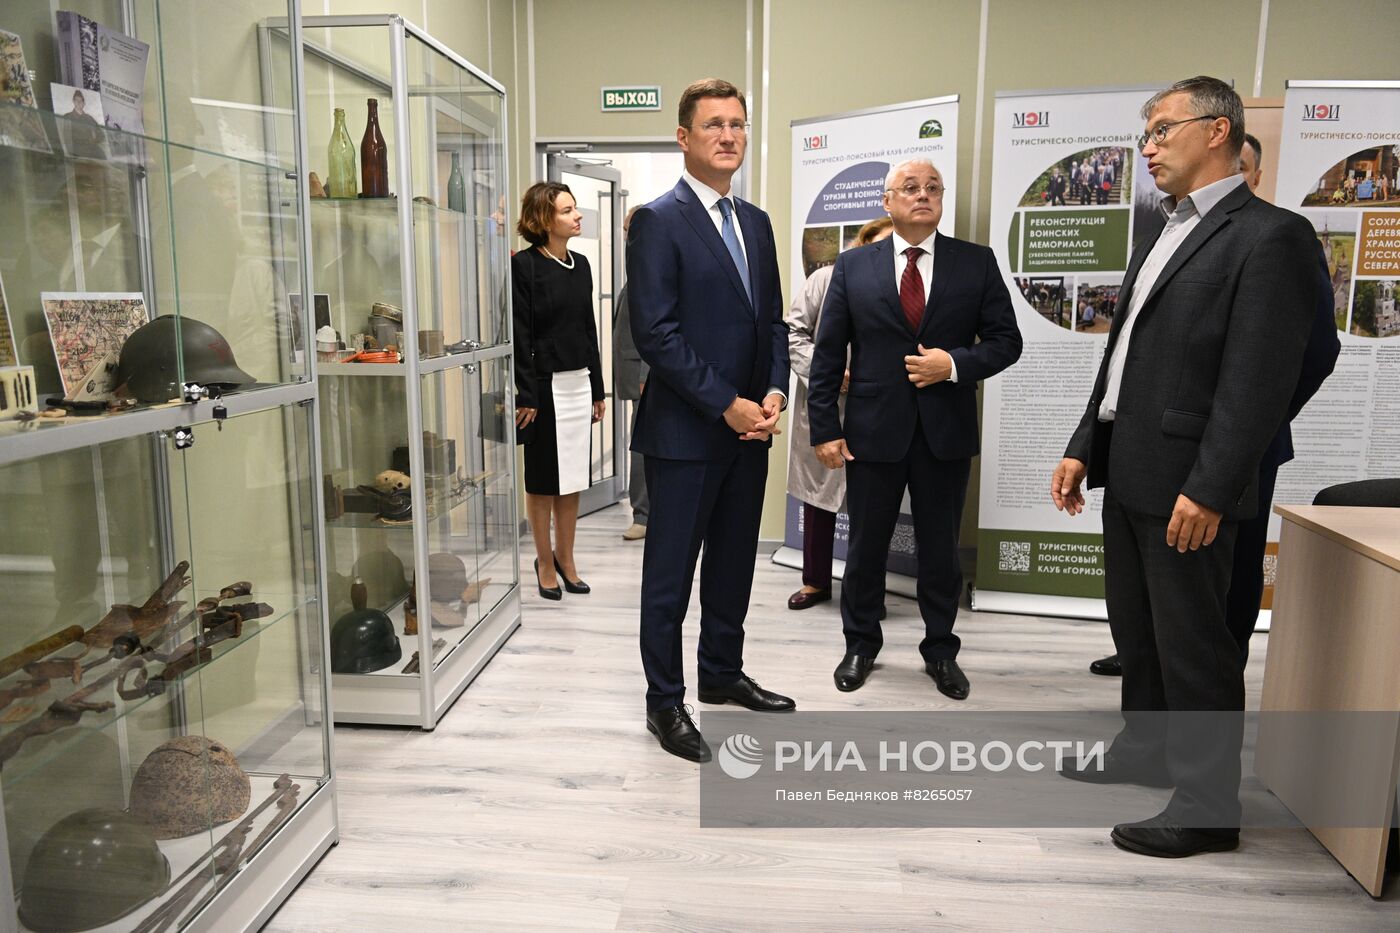 Вице-премьеры правительства РФ посетили университеты в День знаний